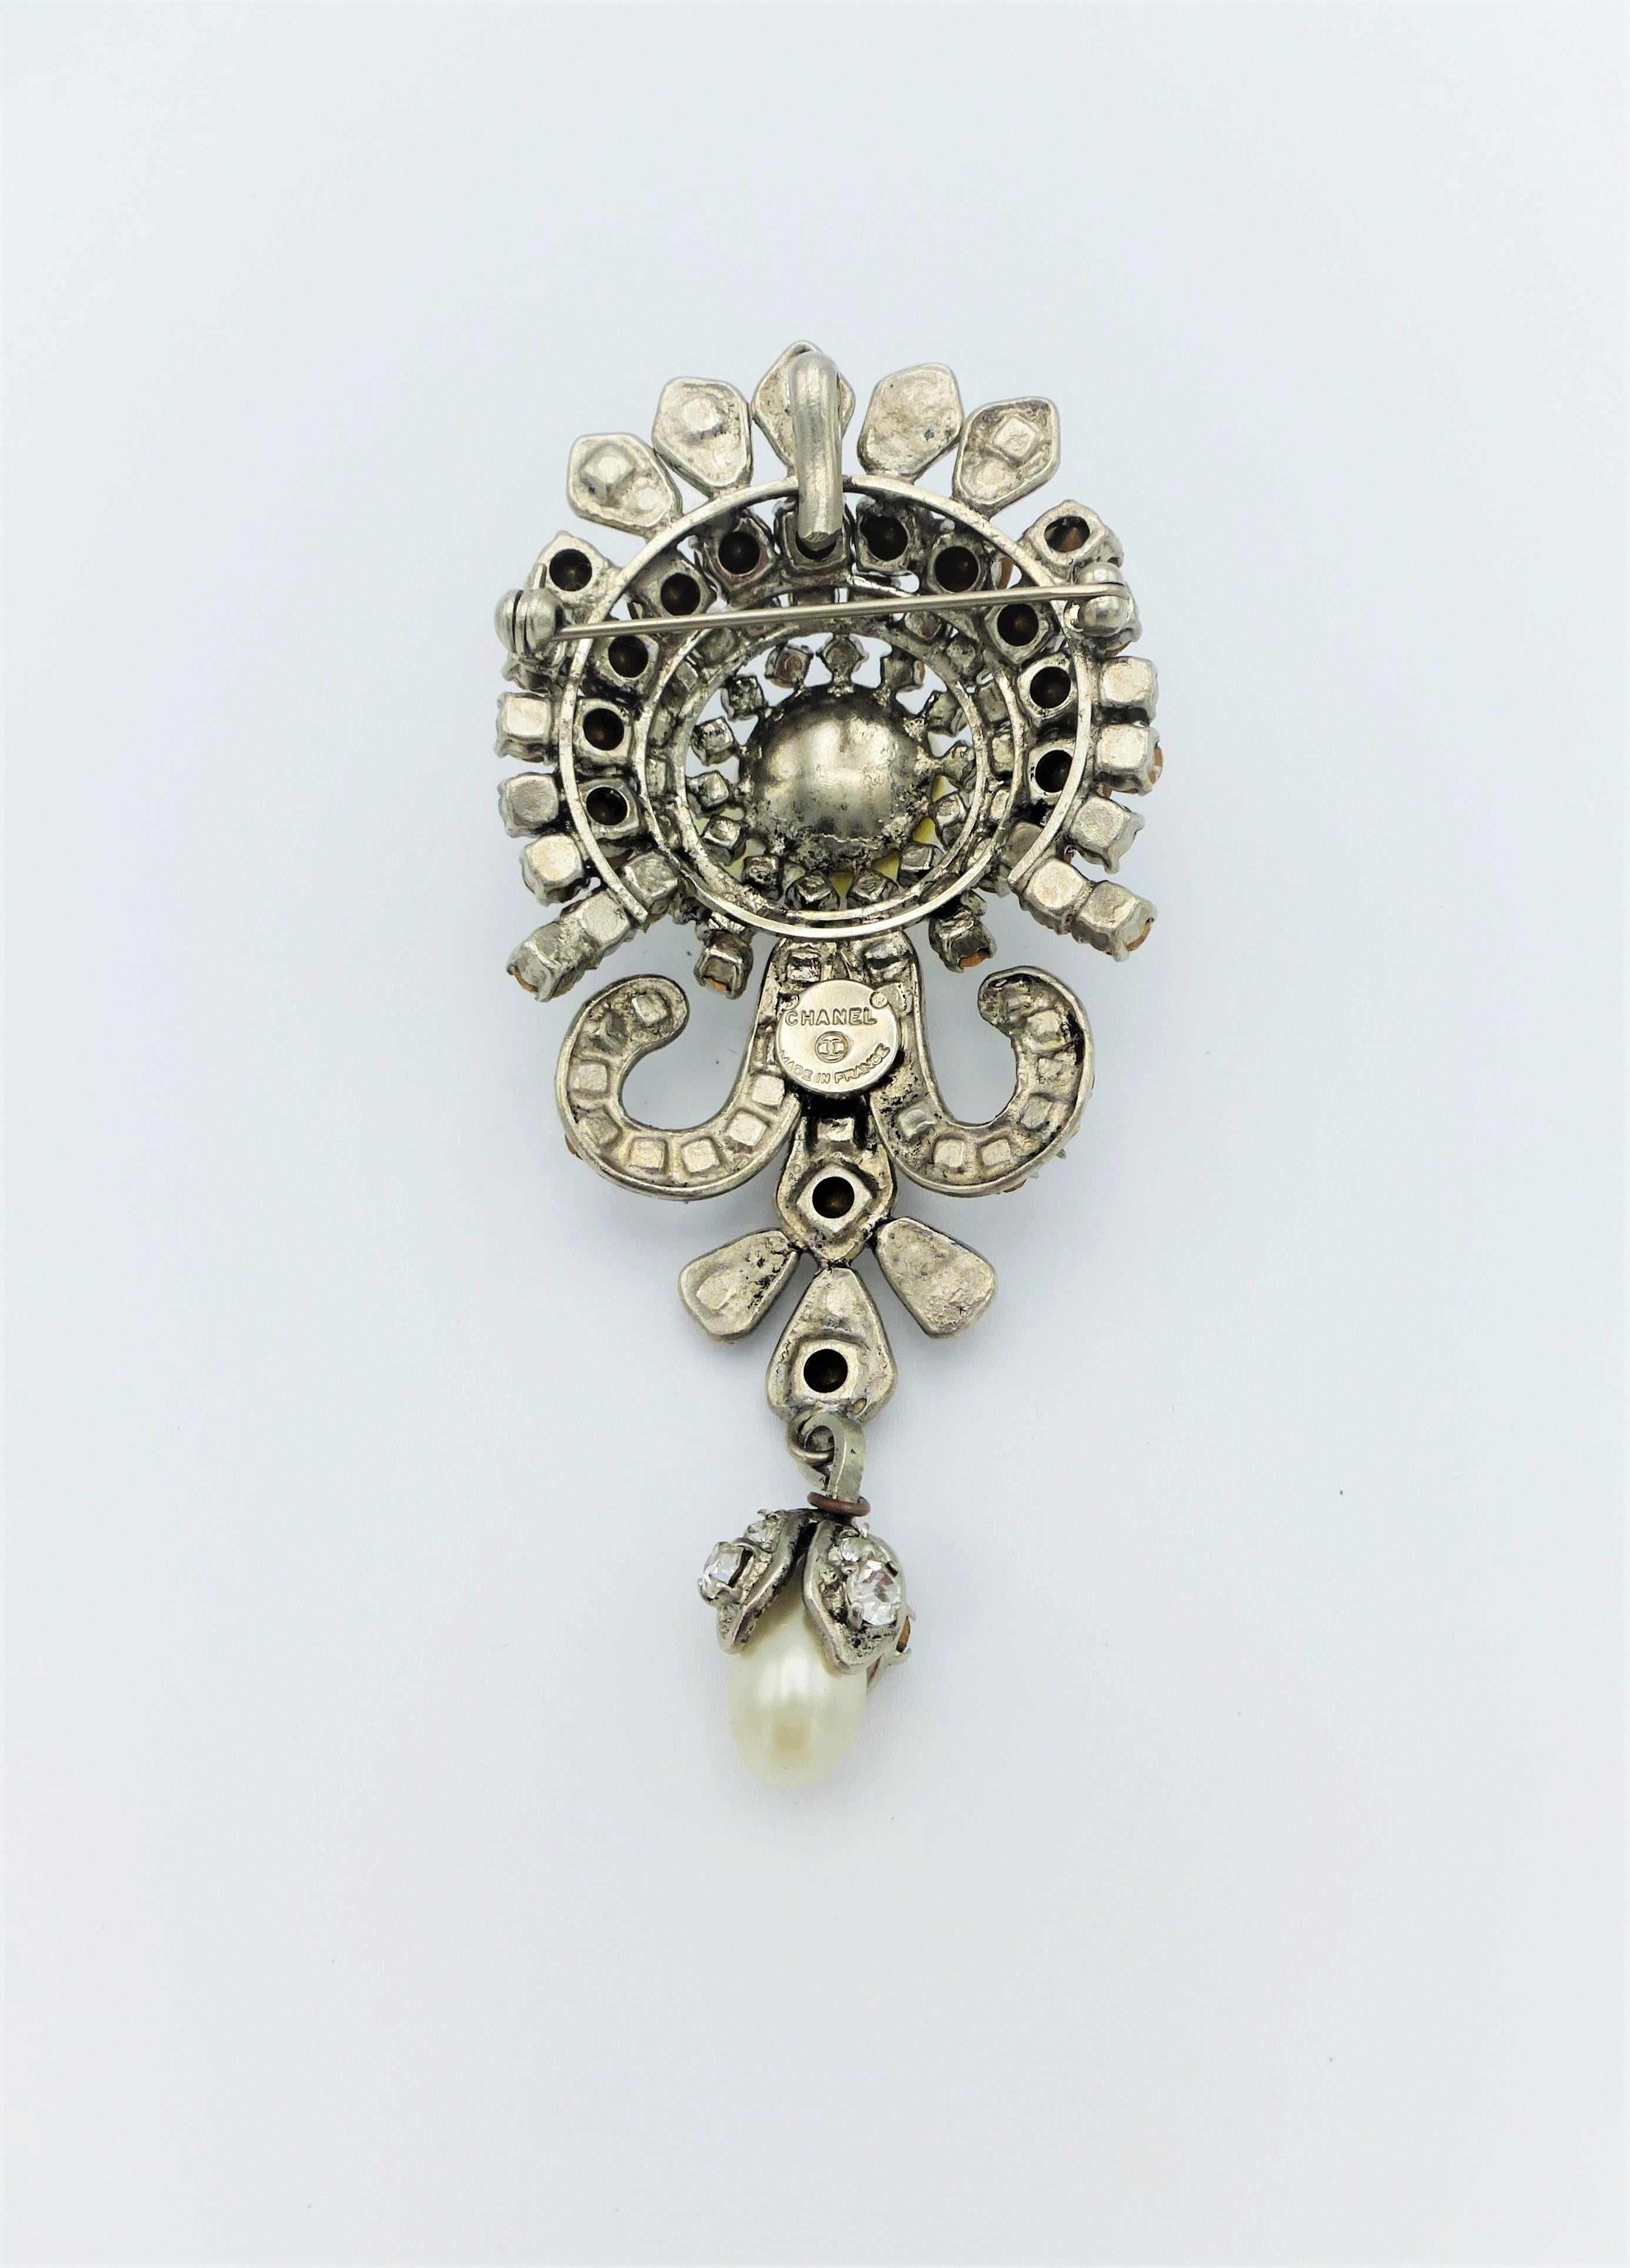 Über
Sehr elegante Chanel Brosche aus rhodiniertem Metall  und mit vielen Strasssteinen und 2 handgefertigten Perlen besetzt.  Eine kleine bewegliche Perlenkette ist angebracht.
Messung: 
Länge 9 cm (3,5 Zoll) 
Breite    4 cm  (1,55 Zoll) 
Hoch    